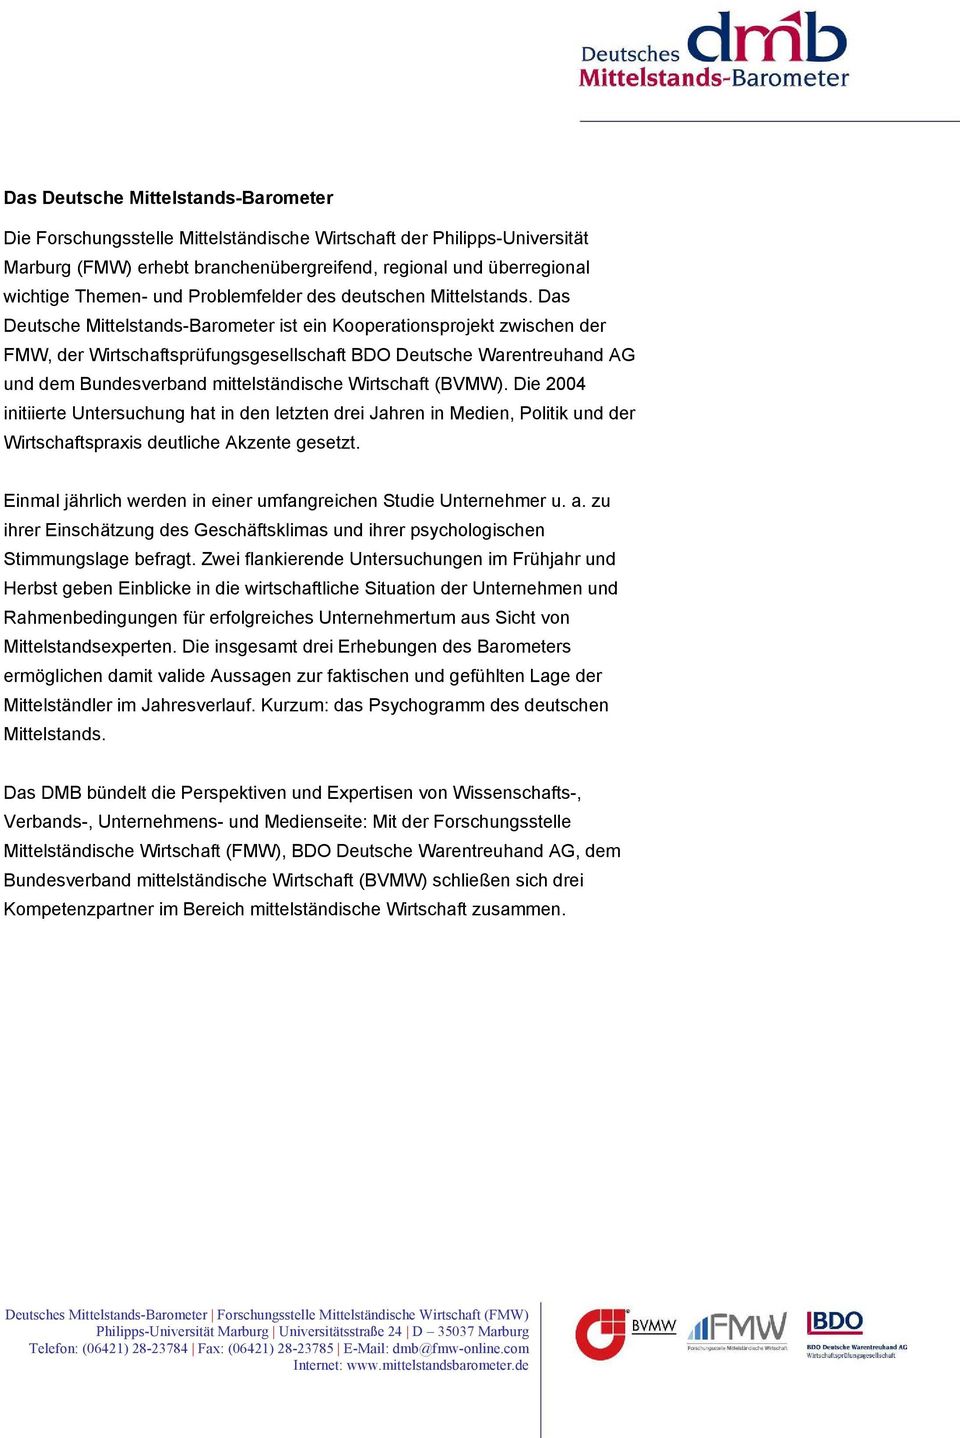 Das Deutsche Mittelstands-Barometer ist ein Kooperationsprojekt zwischen der FMW, der Wirtschaftsprüfungsgesellschaft BDO Deutsche Warentreuhand AG und dem Bundesverband mittelständische Wirtschaft